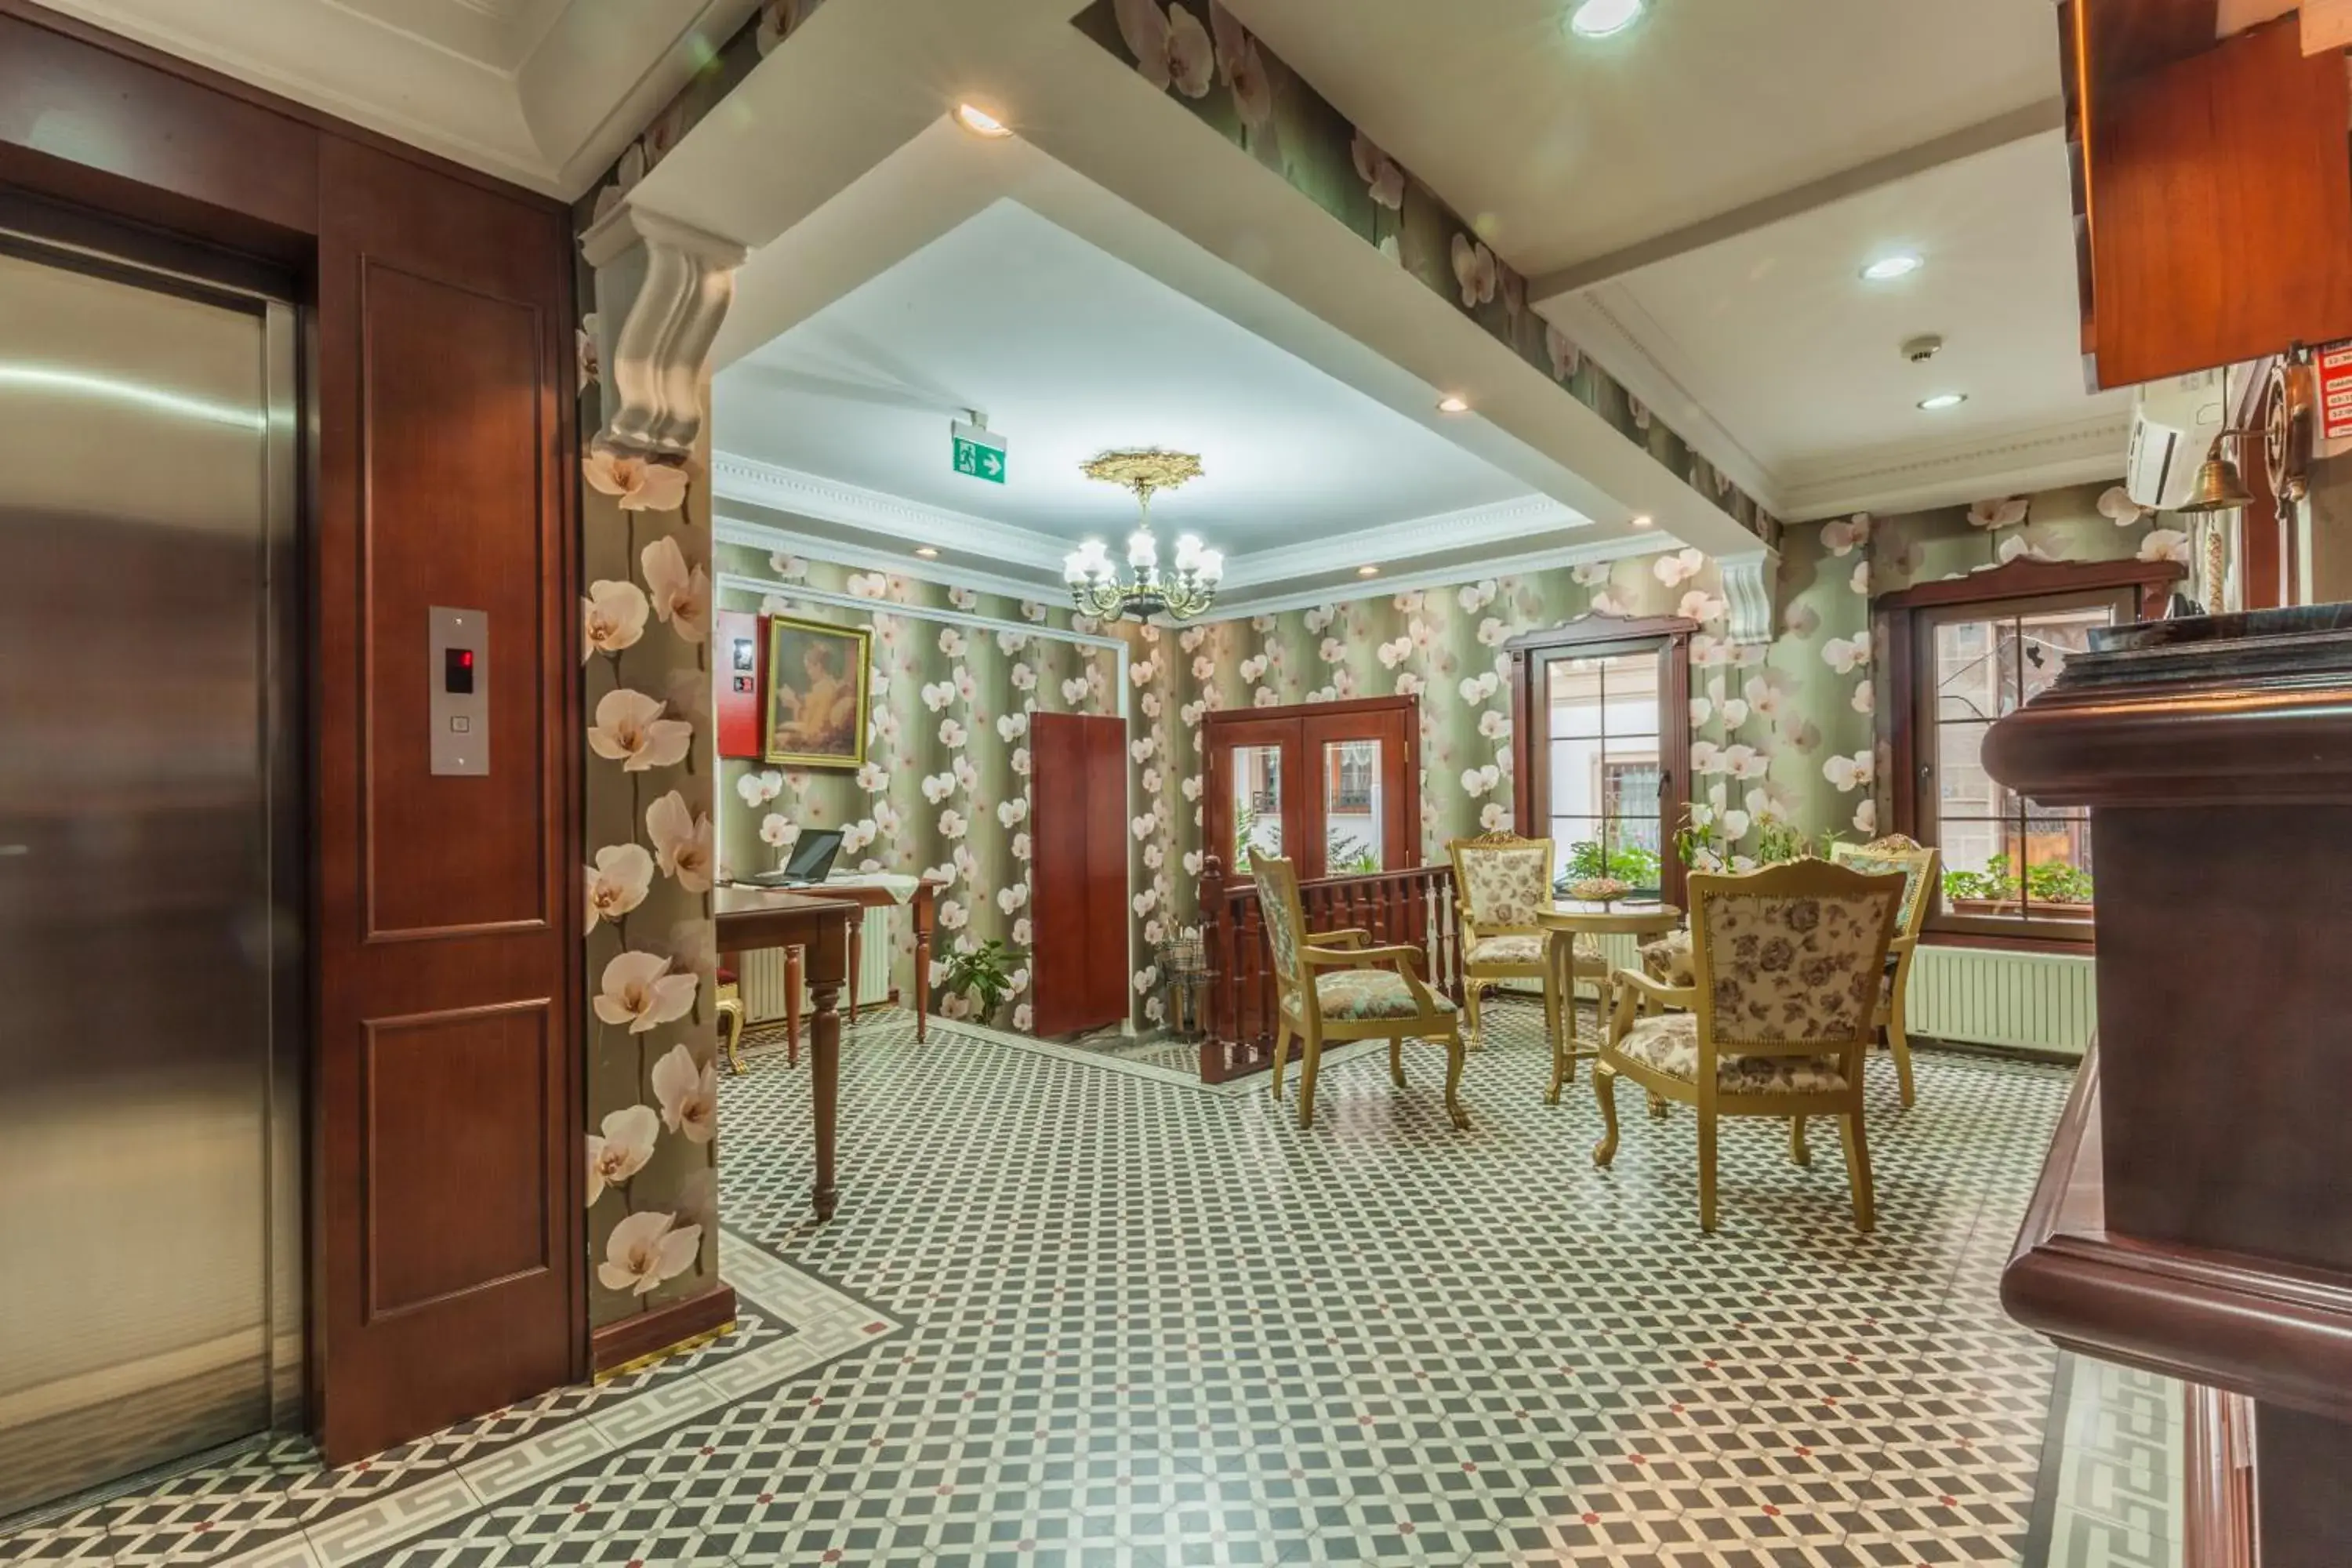 Lobby or reception in Saba Sultan Hotel